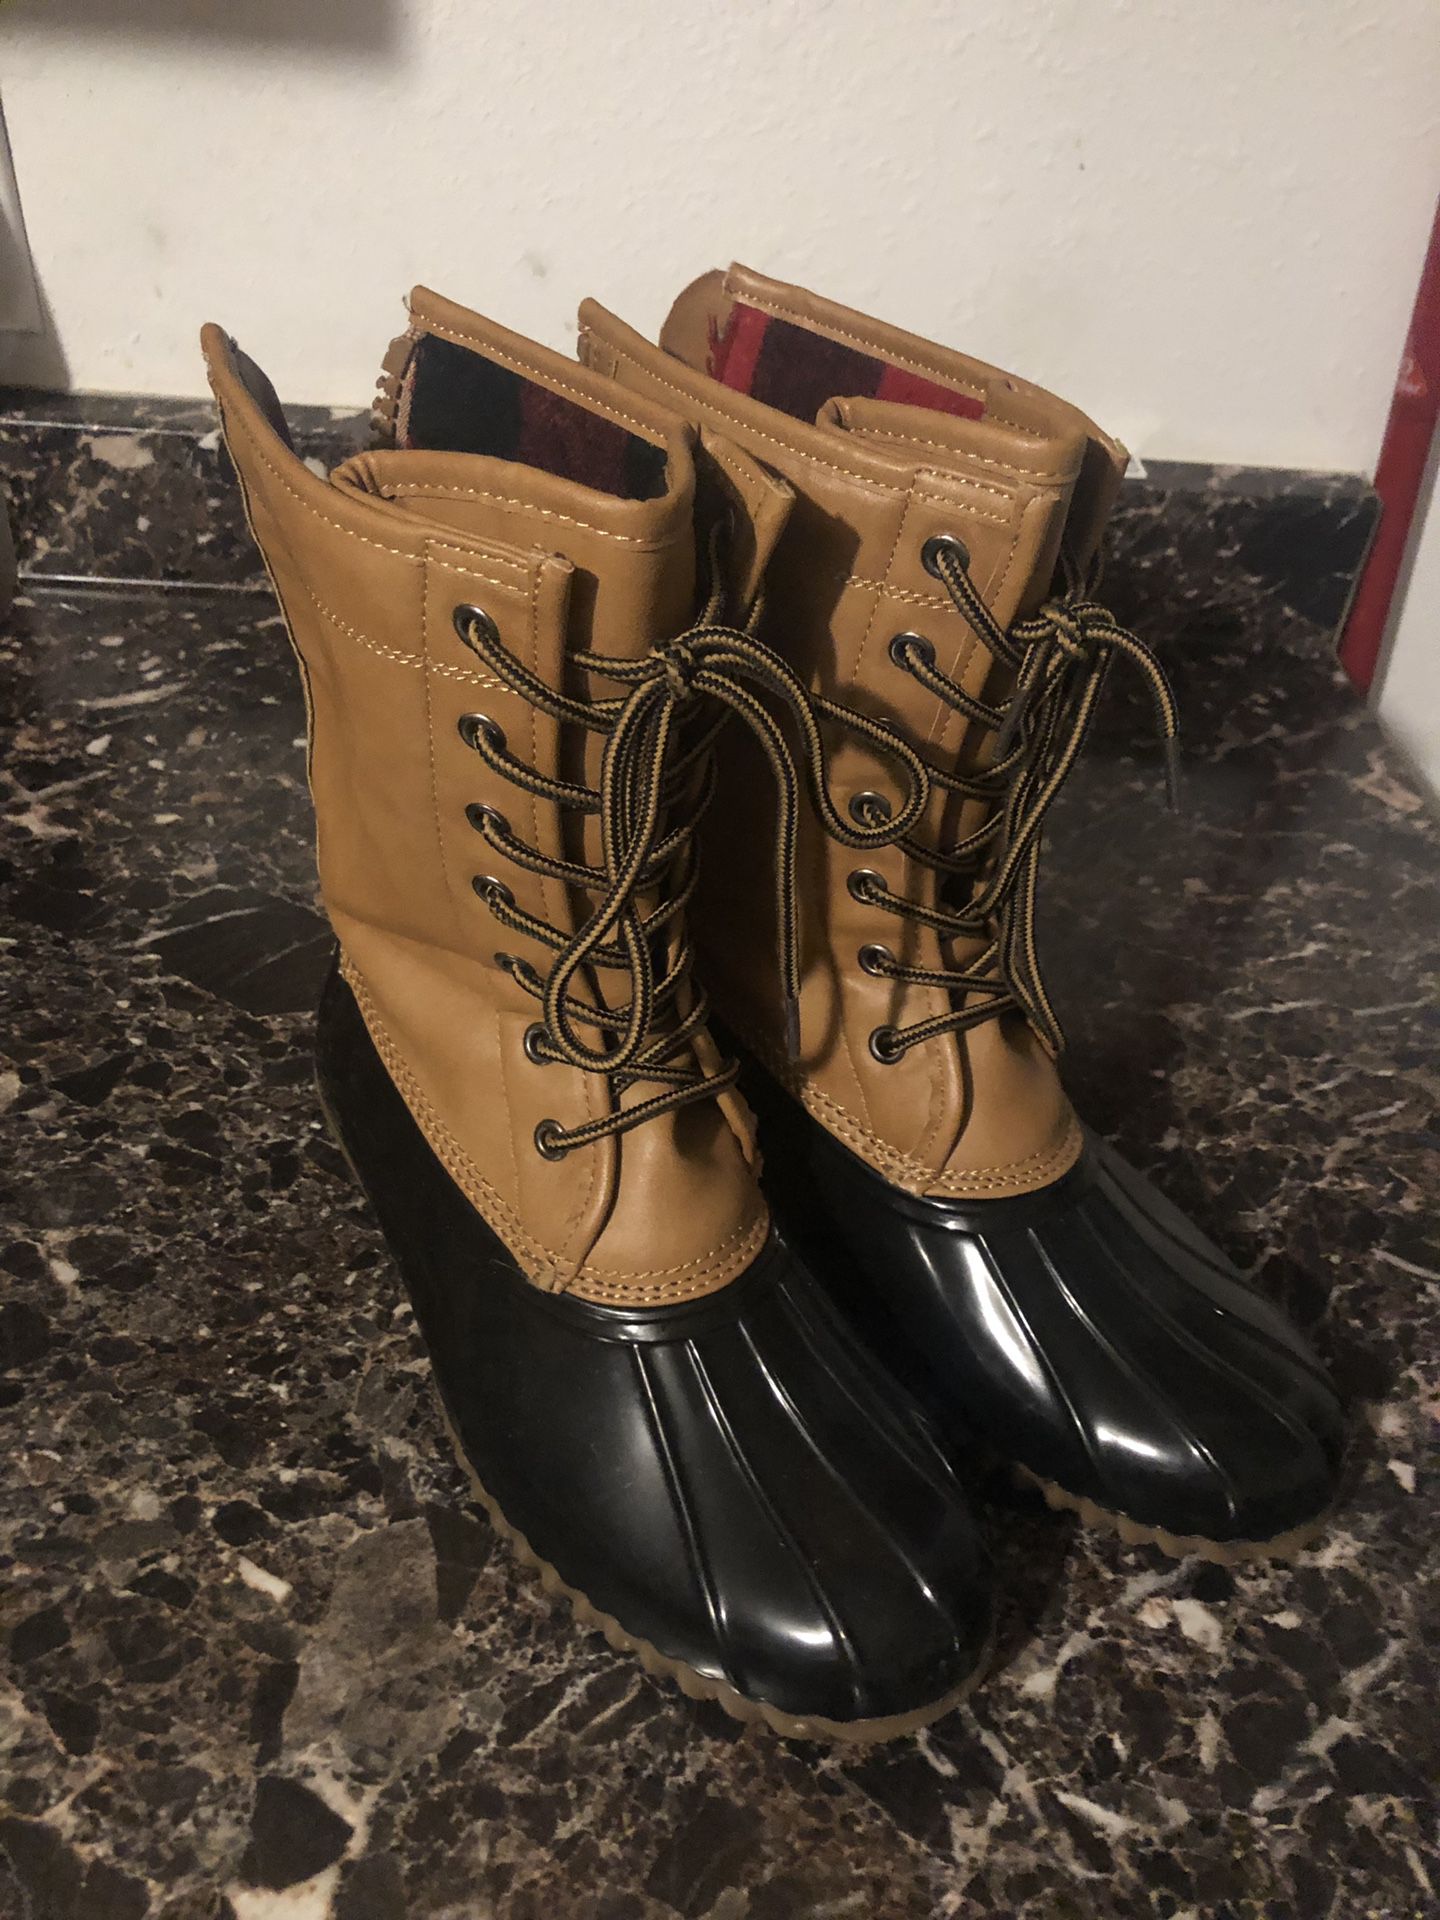 Rain Boots size 8.5